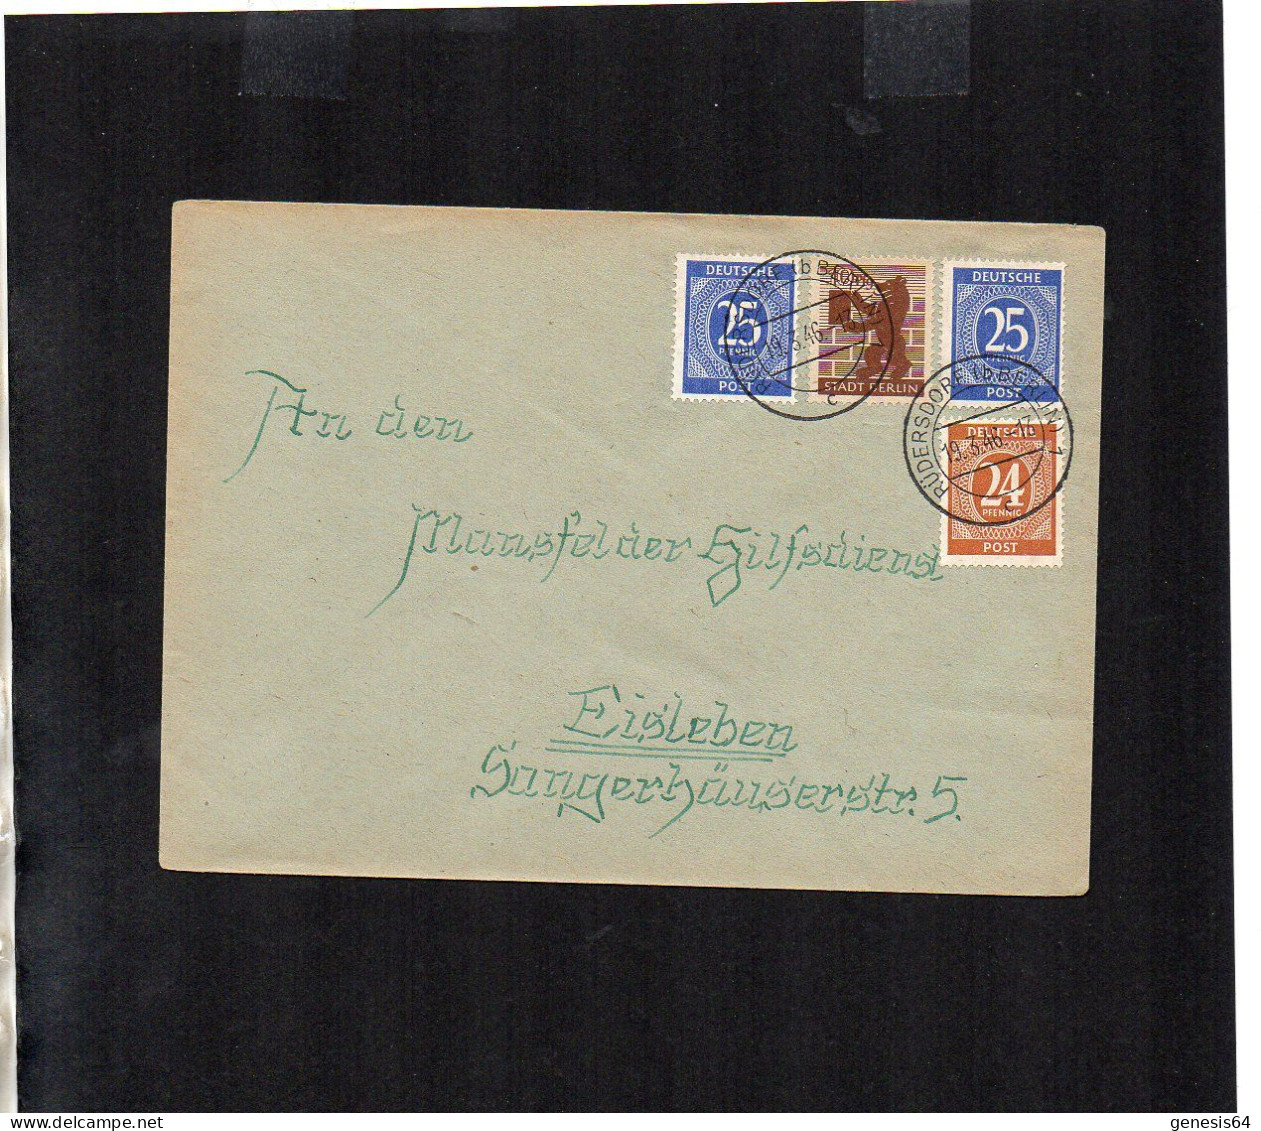 Berlin Brandenburg - Brief Mit Mischfrankatur - Rüdersdorf - 19.3.46 - P2 (1ZKSBZ062) - Berlino & Brandenburgo